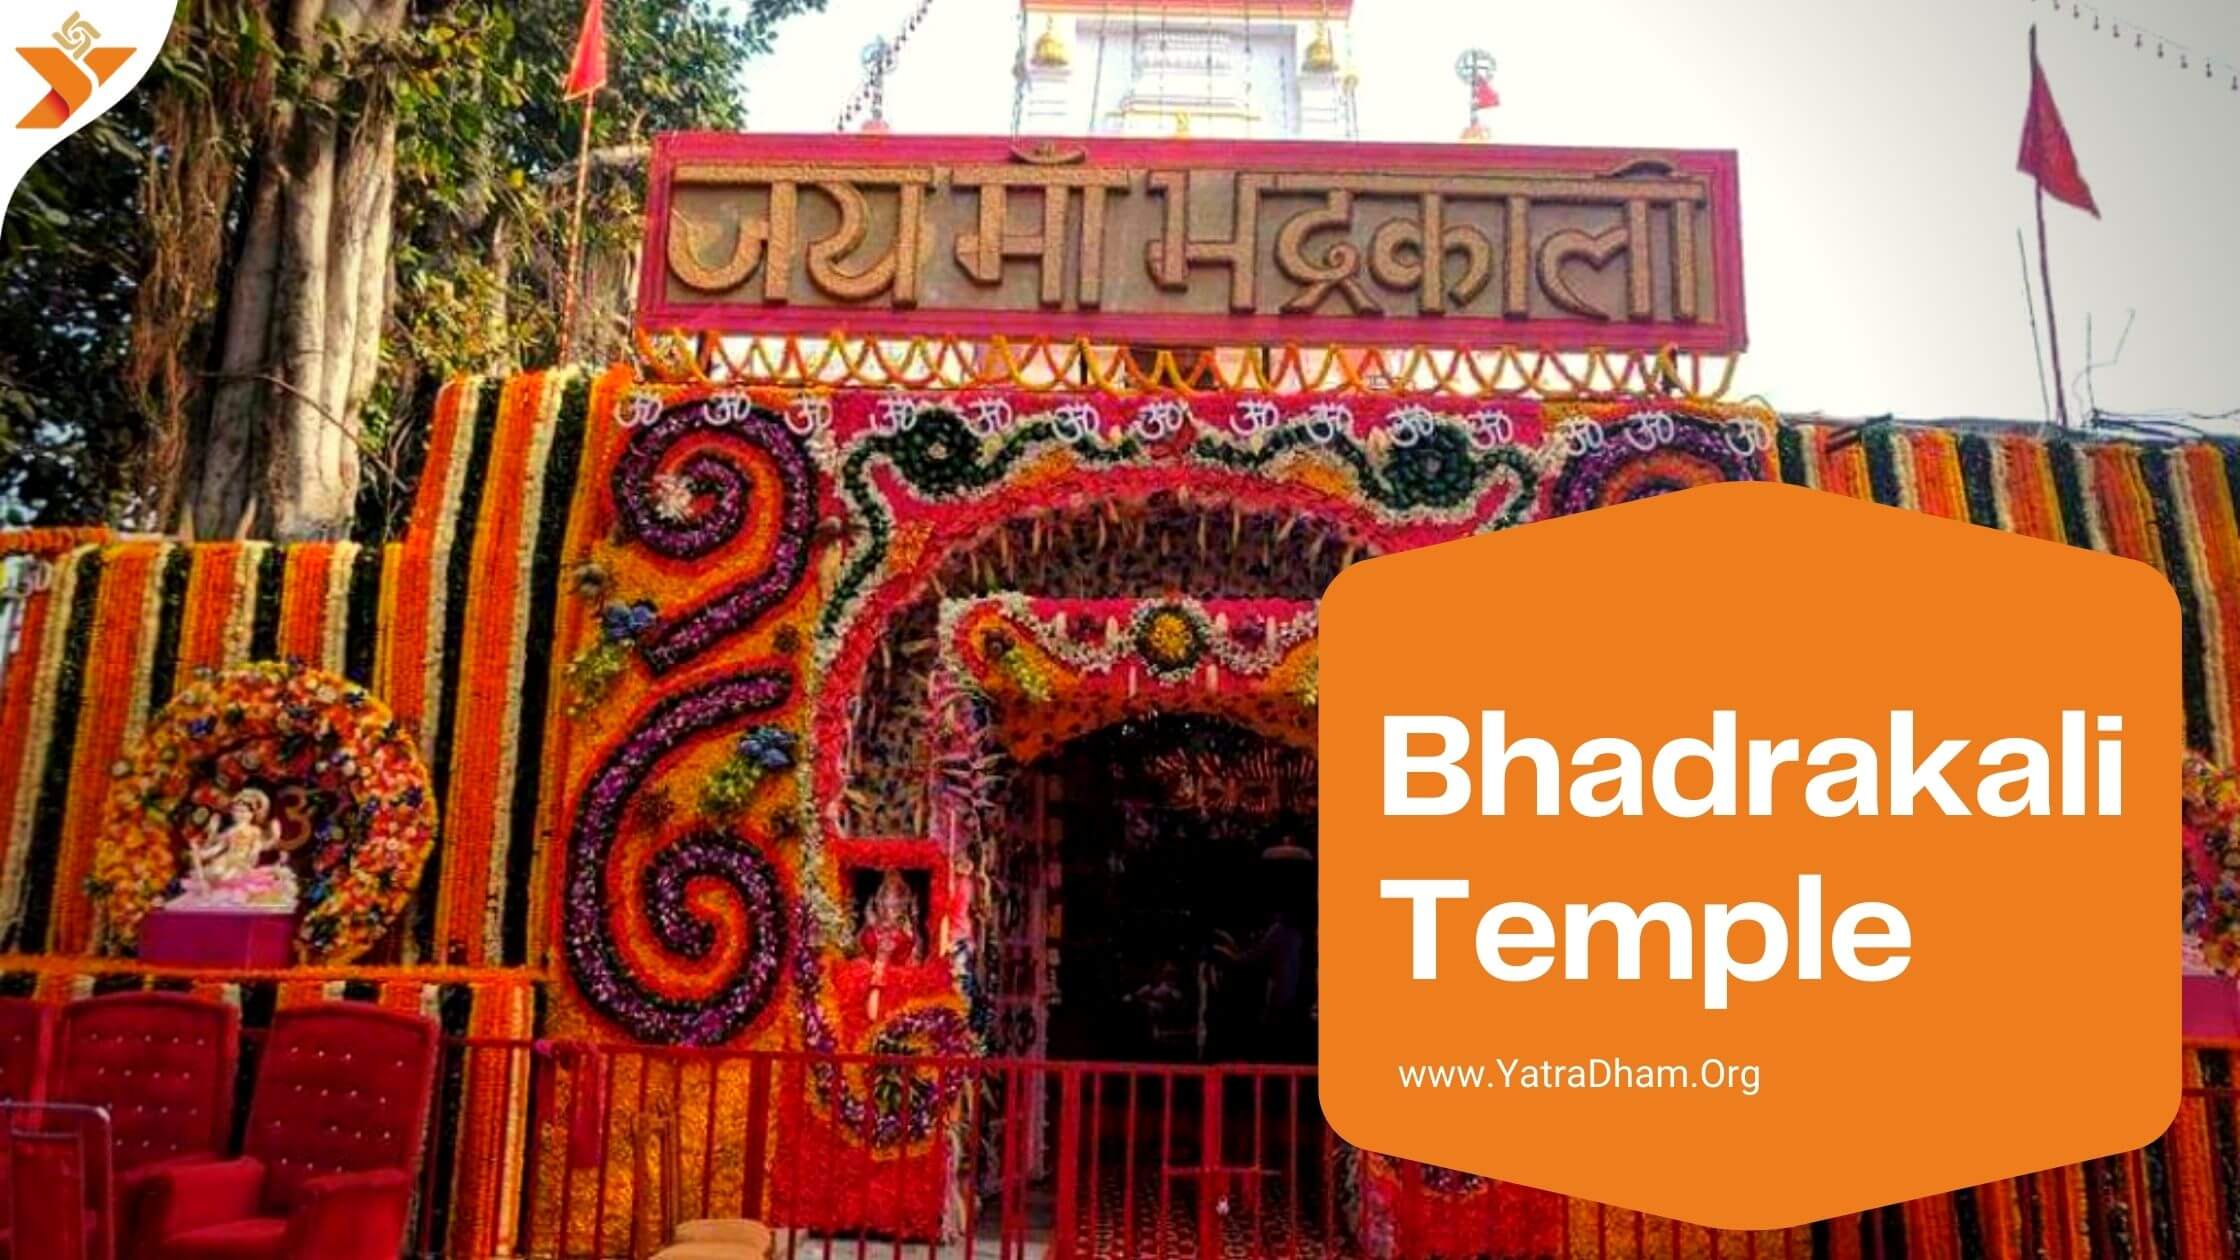 Bhadrakali Temple - Kurukshetra , Haryana